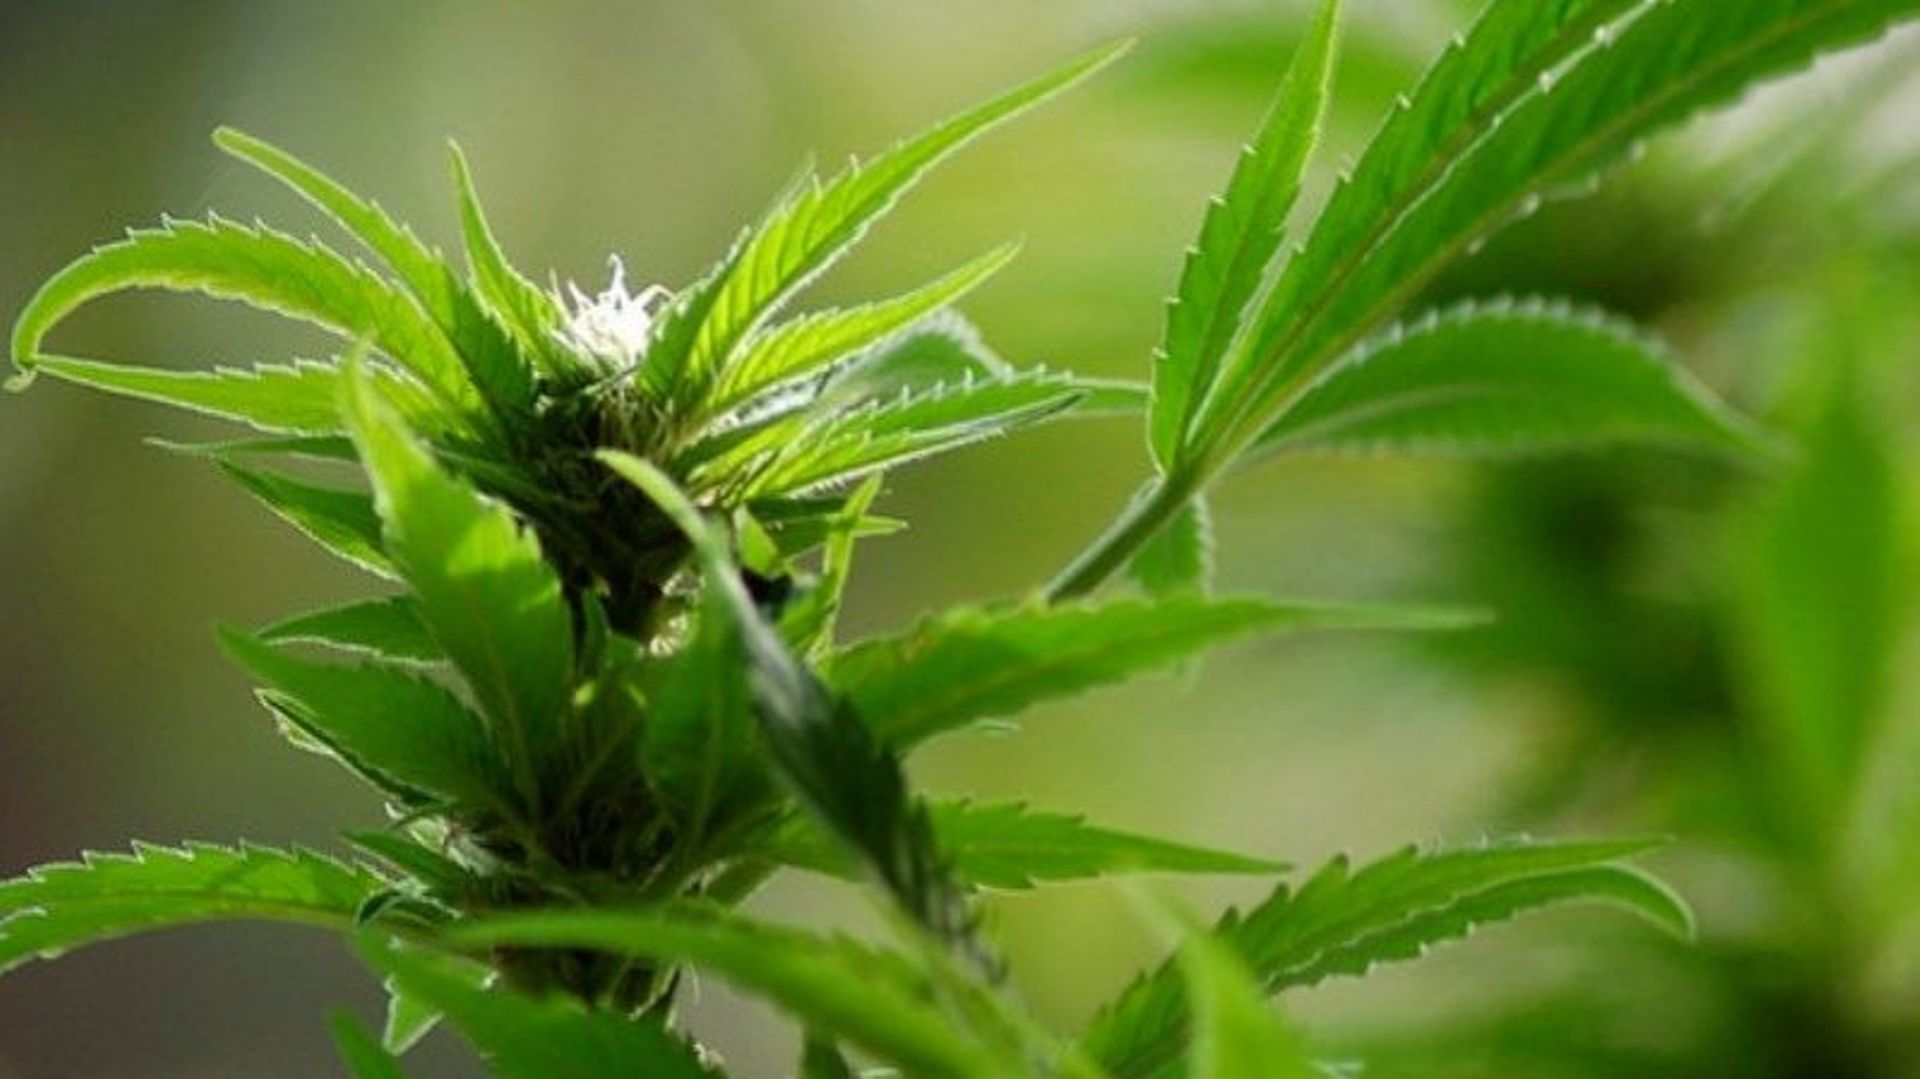 En août dernier, 2864 plants de cannabis avaient été découverts dans un hangar de la rue Victor Lagneau à Sambreville. 